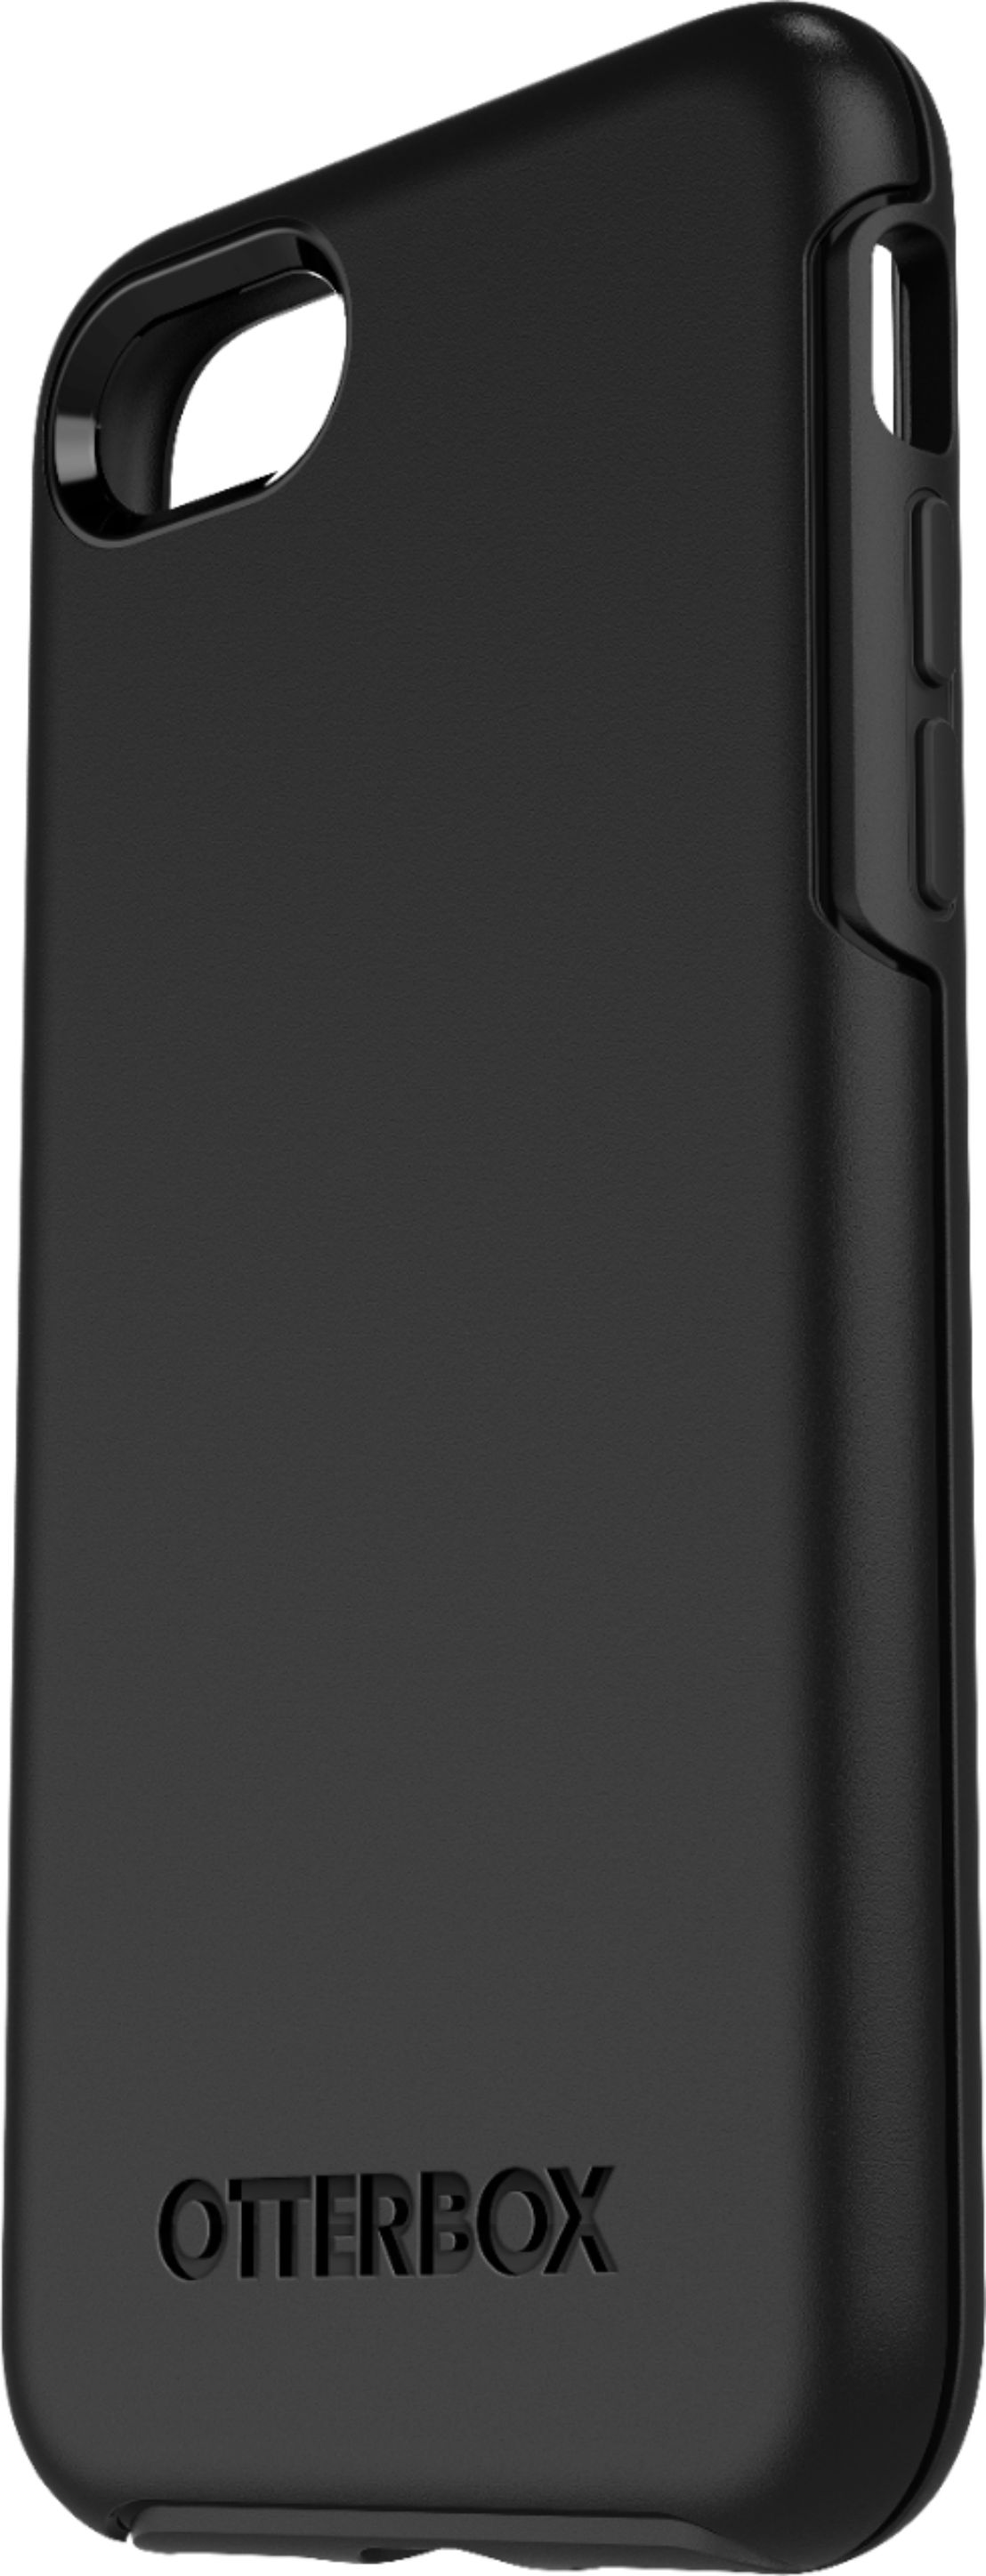 XOXO Phone Case - iPhone SE 2020 Case